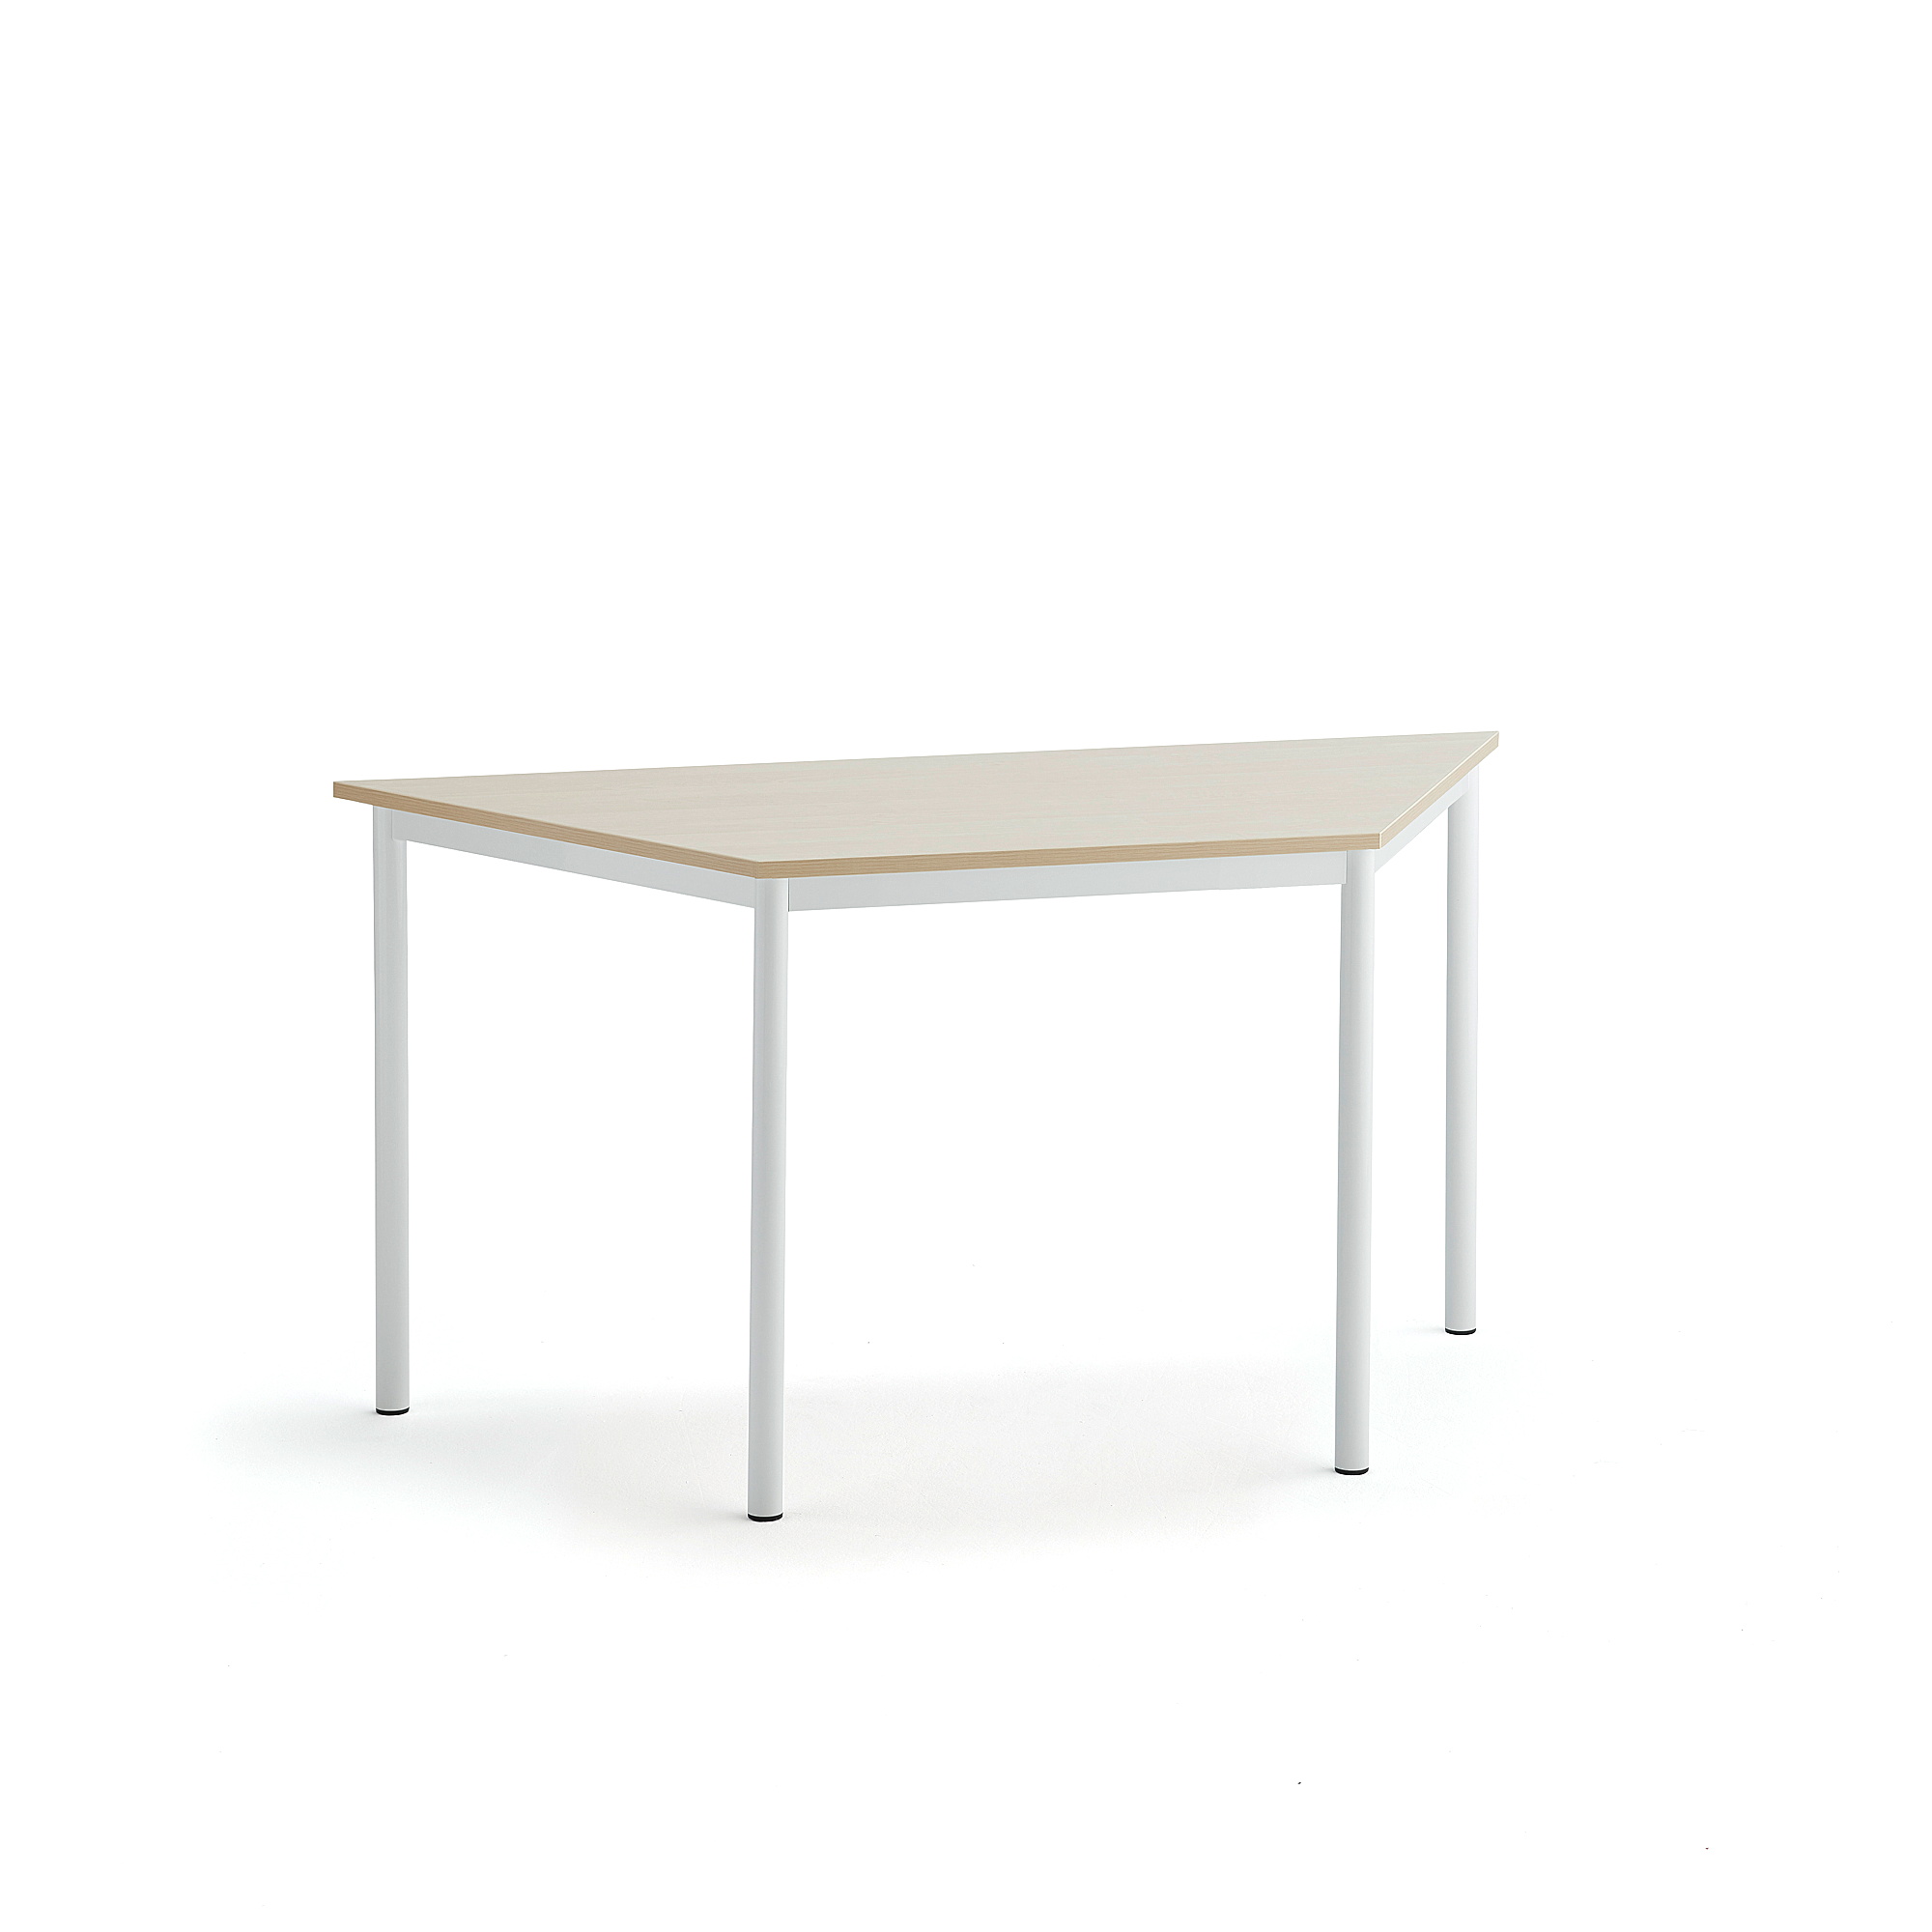 Stůl SONITUS TRAPETS, 1400x700x720 mm, bílé nohy, HPL deska tlumící hluk, bříza